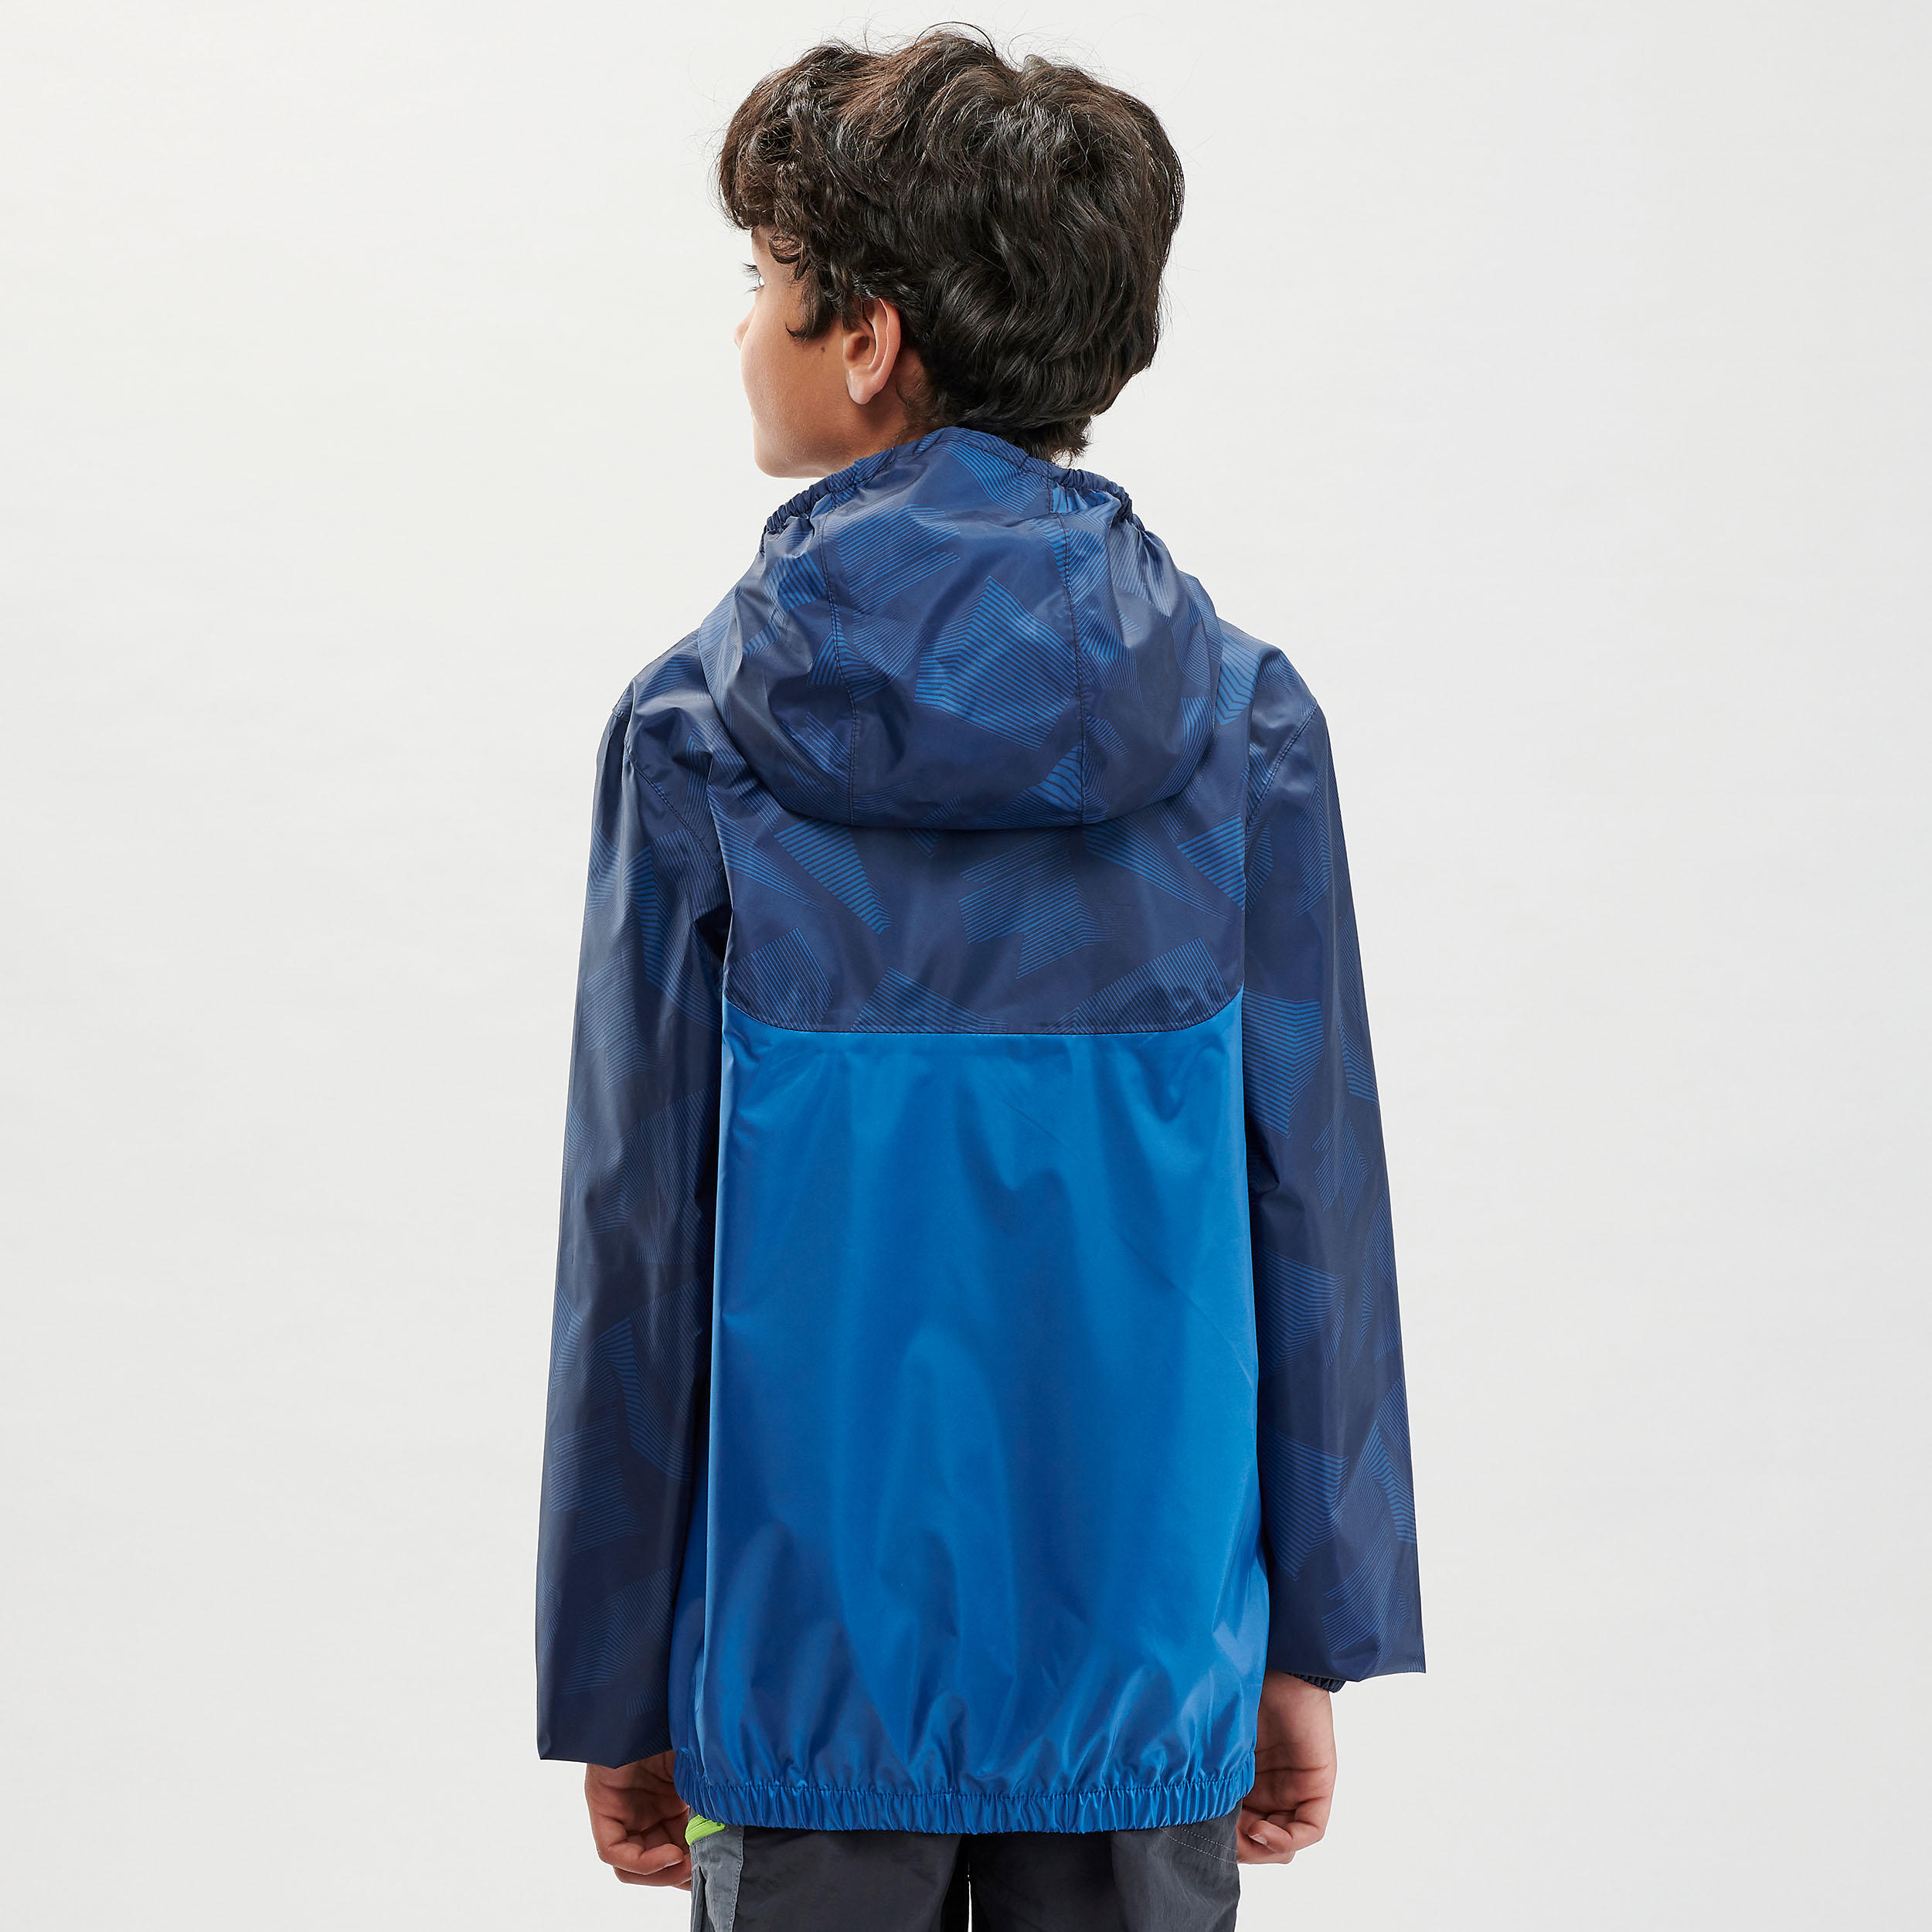 Kids’ Hiking Waterproof Jacket MH150 7-15 Years - blue 4/8